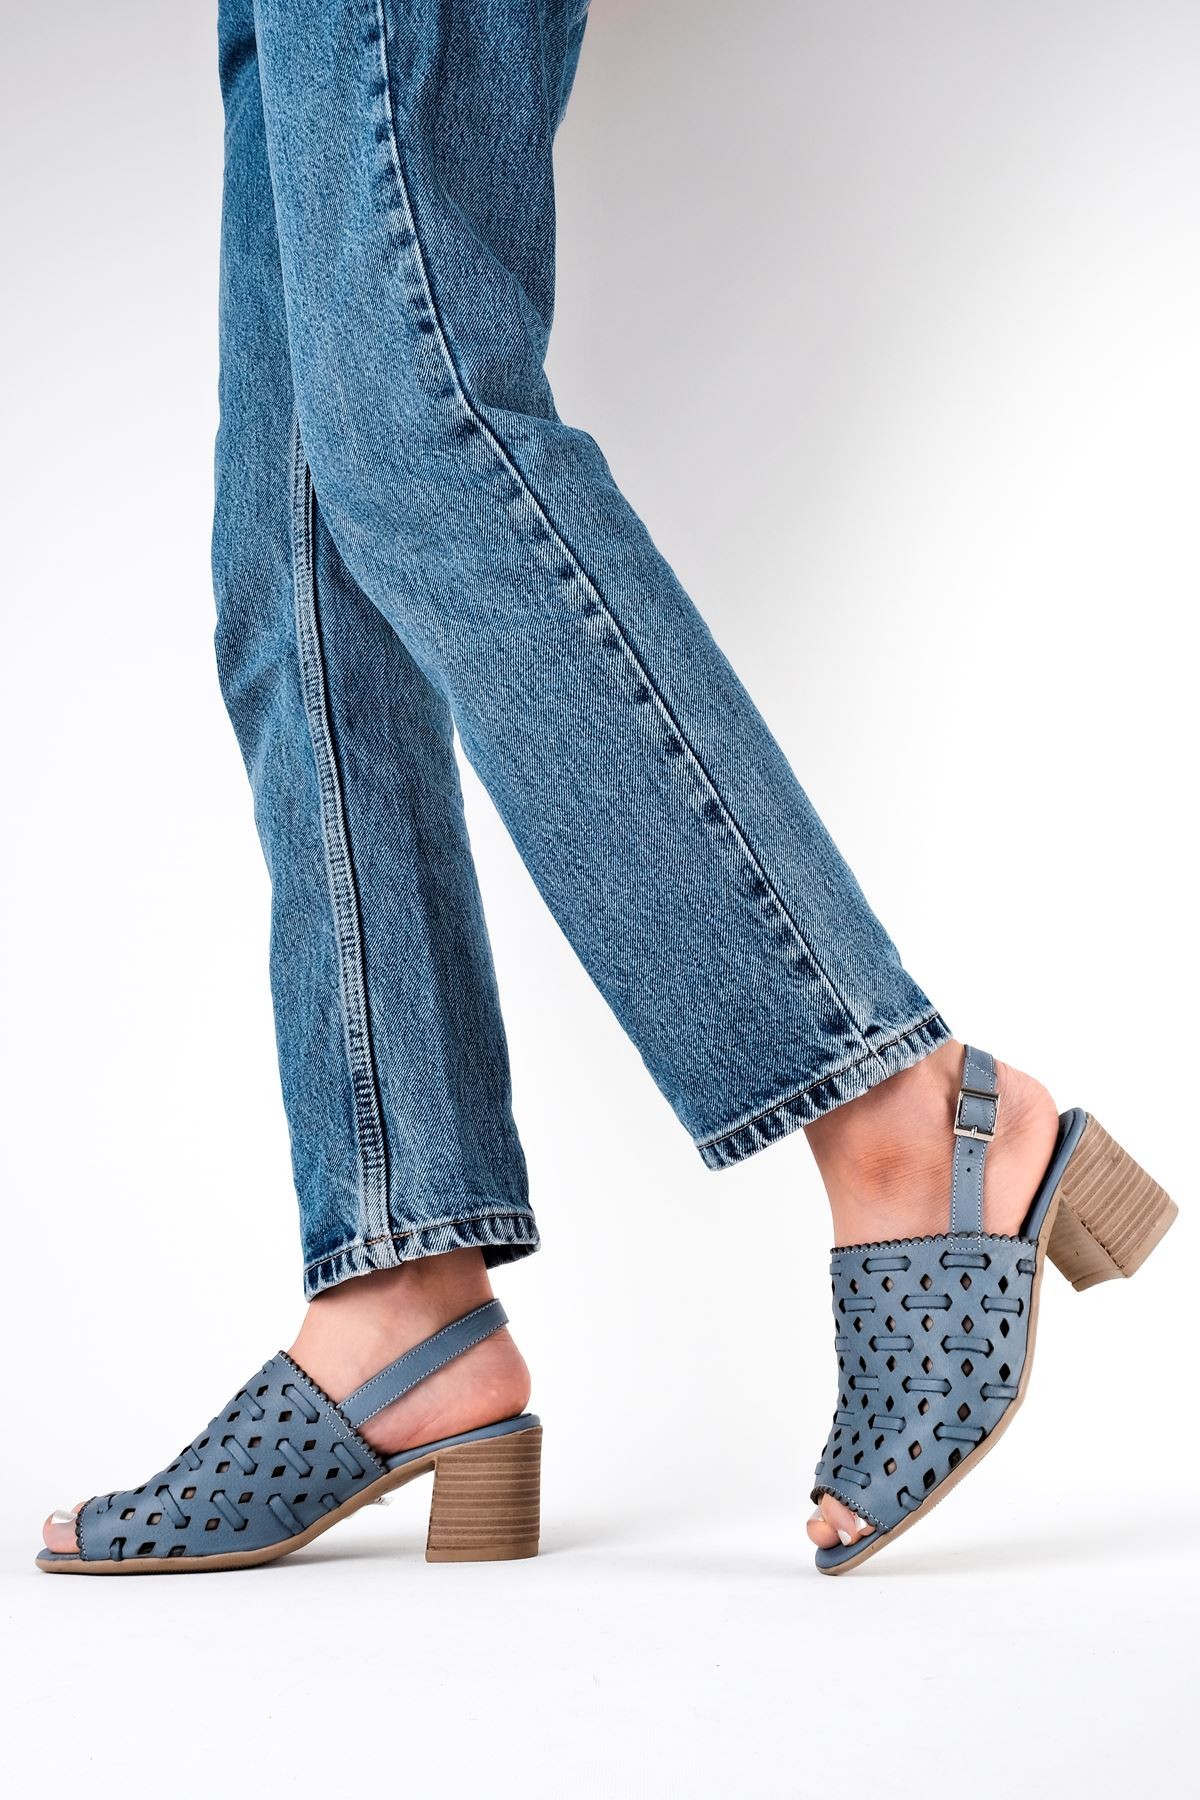 Opaly Kadın Hakiki Deri Arkası Açık Topuklu Sandalet B3187 - Mavi